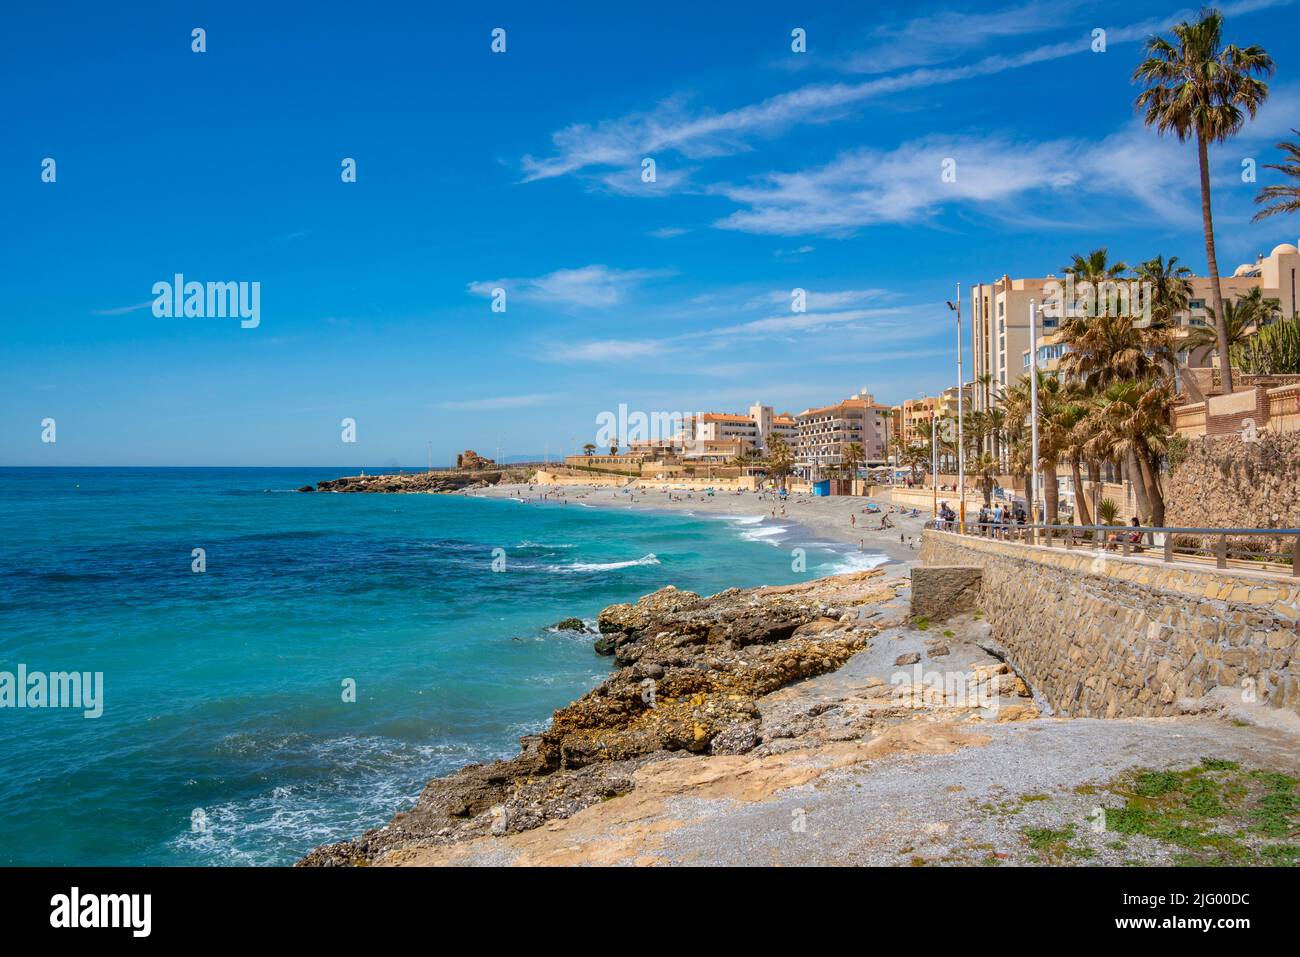 Vista de la playa, hoteles y costa en Nerja, Nerja, provincia de Málaga, Andalucía, España, Mediterráneo, Europa Foto de stock